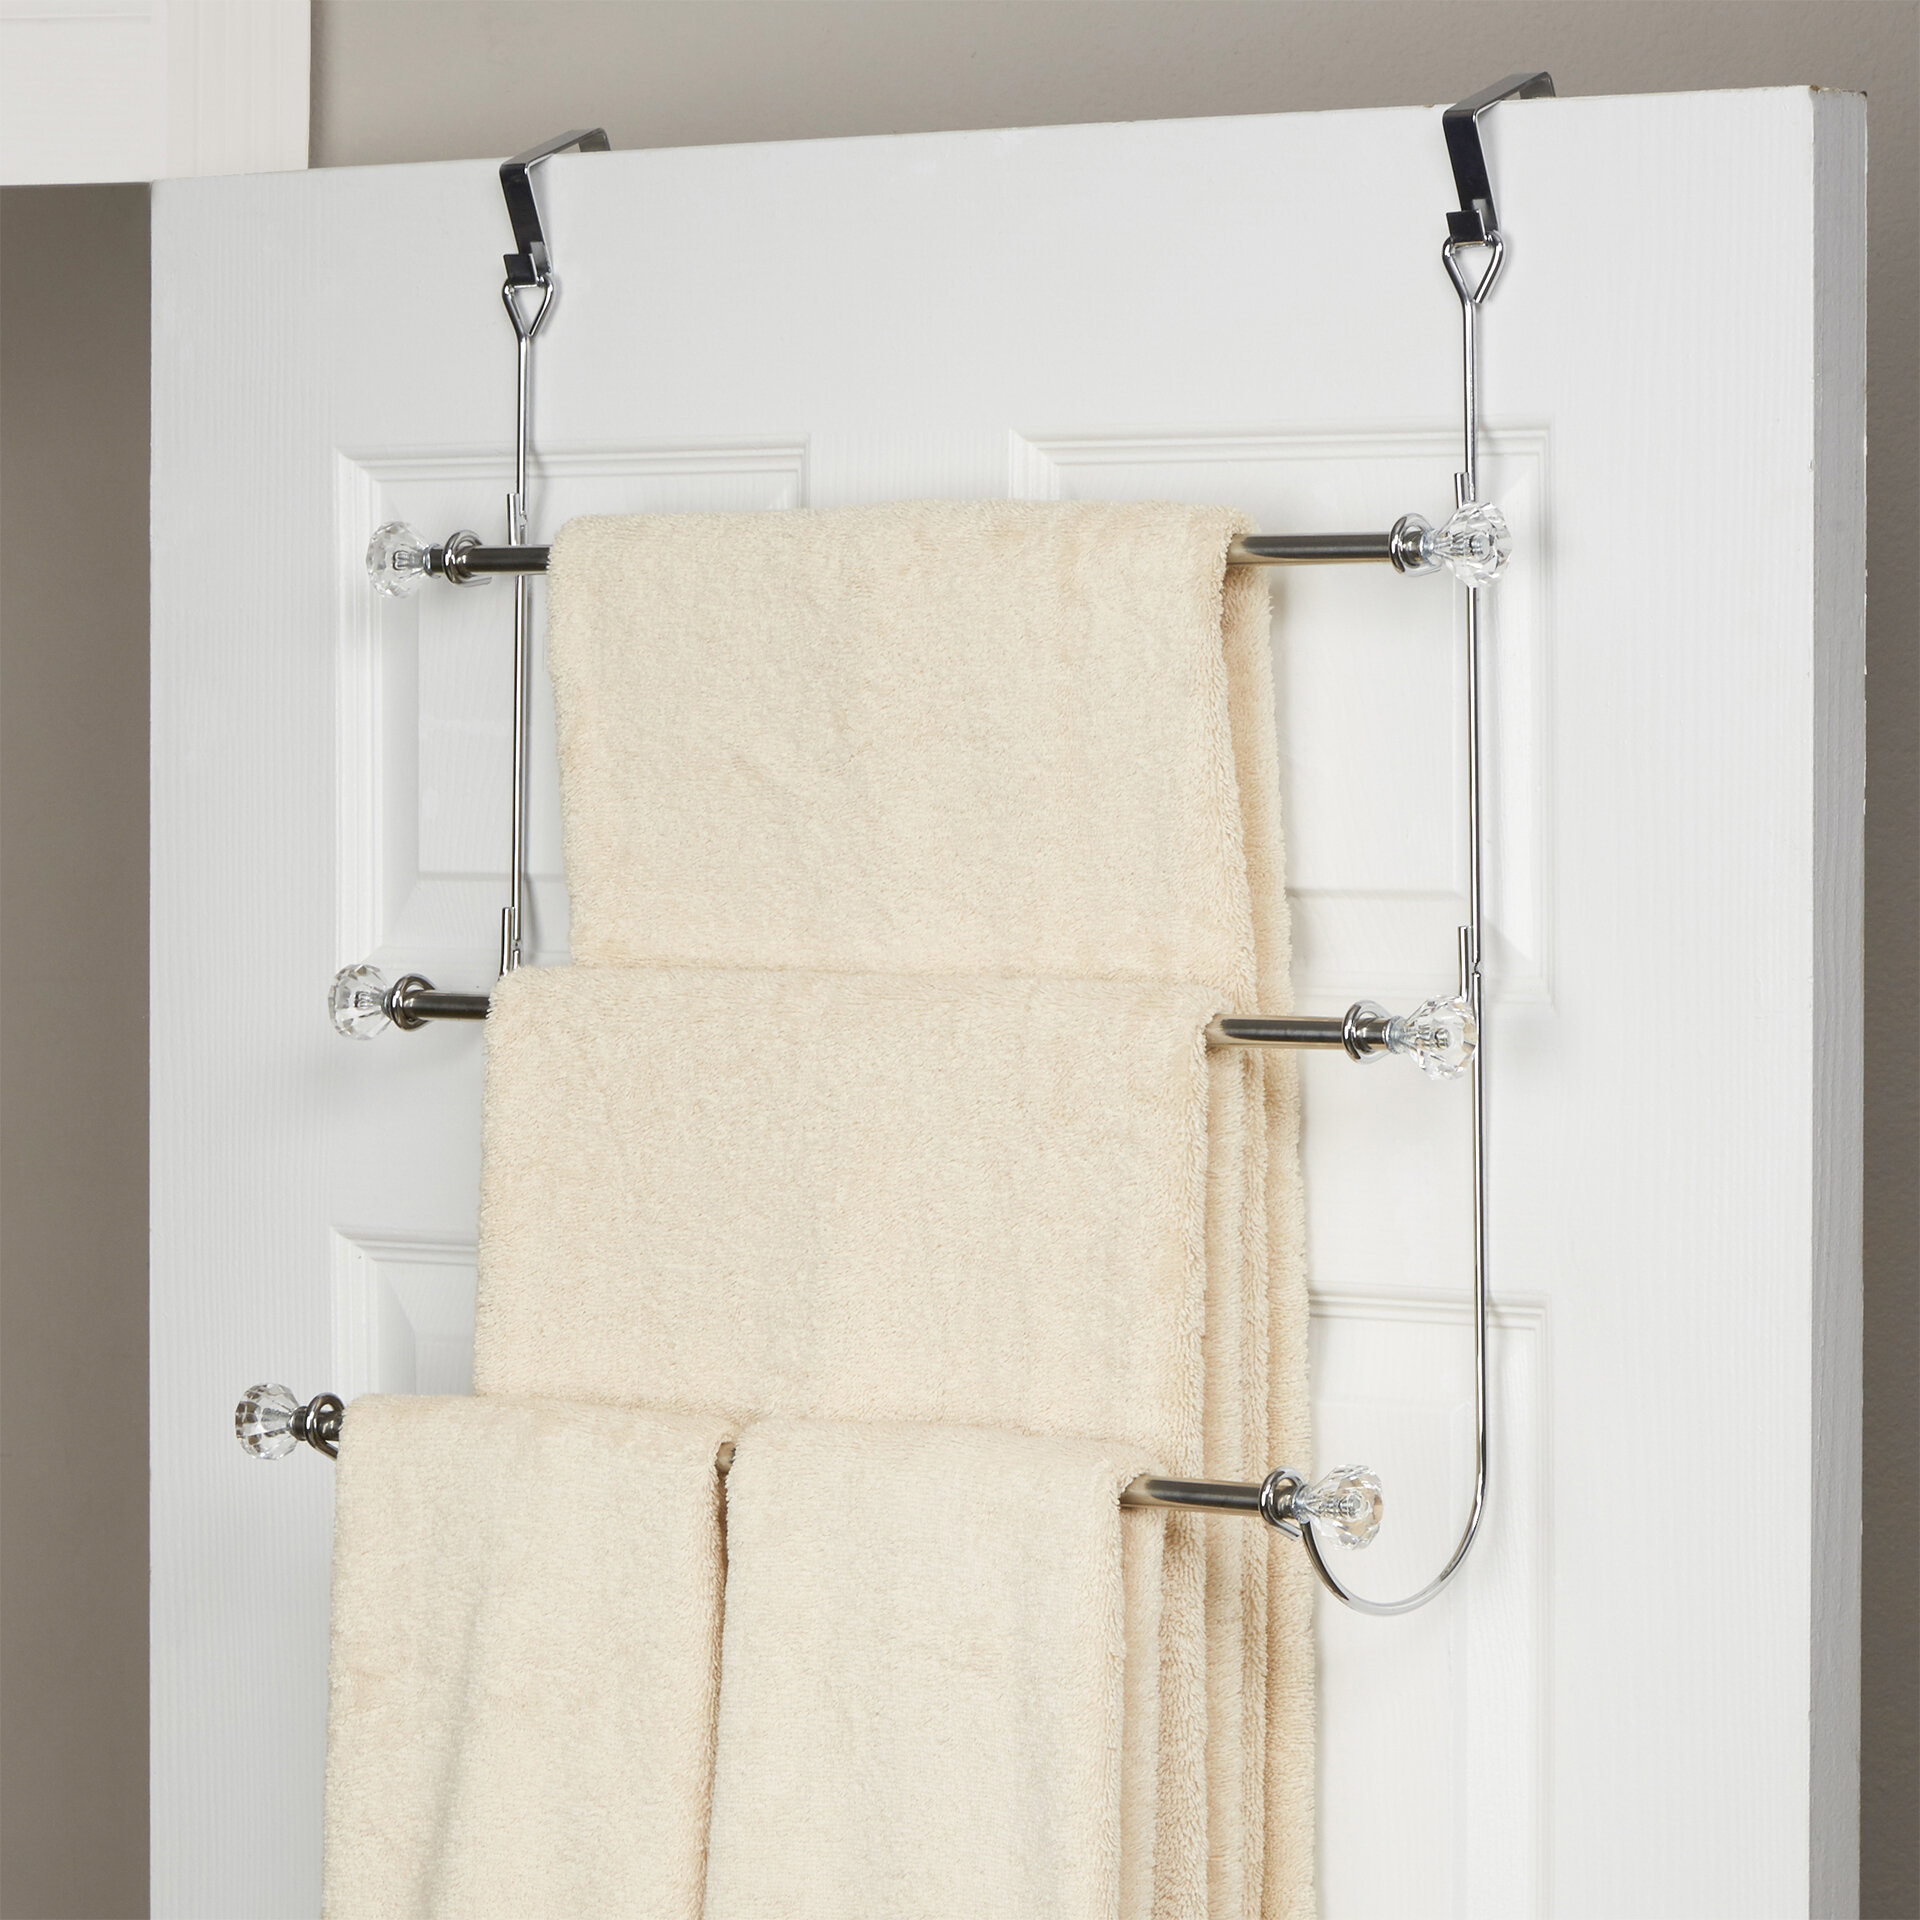 Towel Rack Bathroom Hanging Holder Wall Mount Over The Door Hanger Organizer Bar 